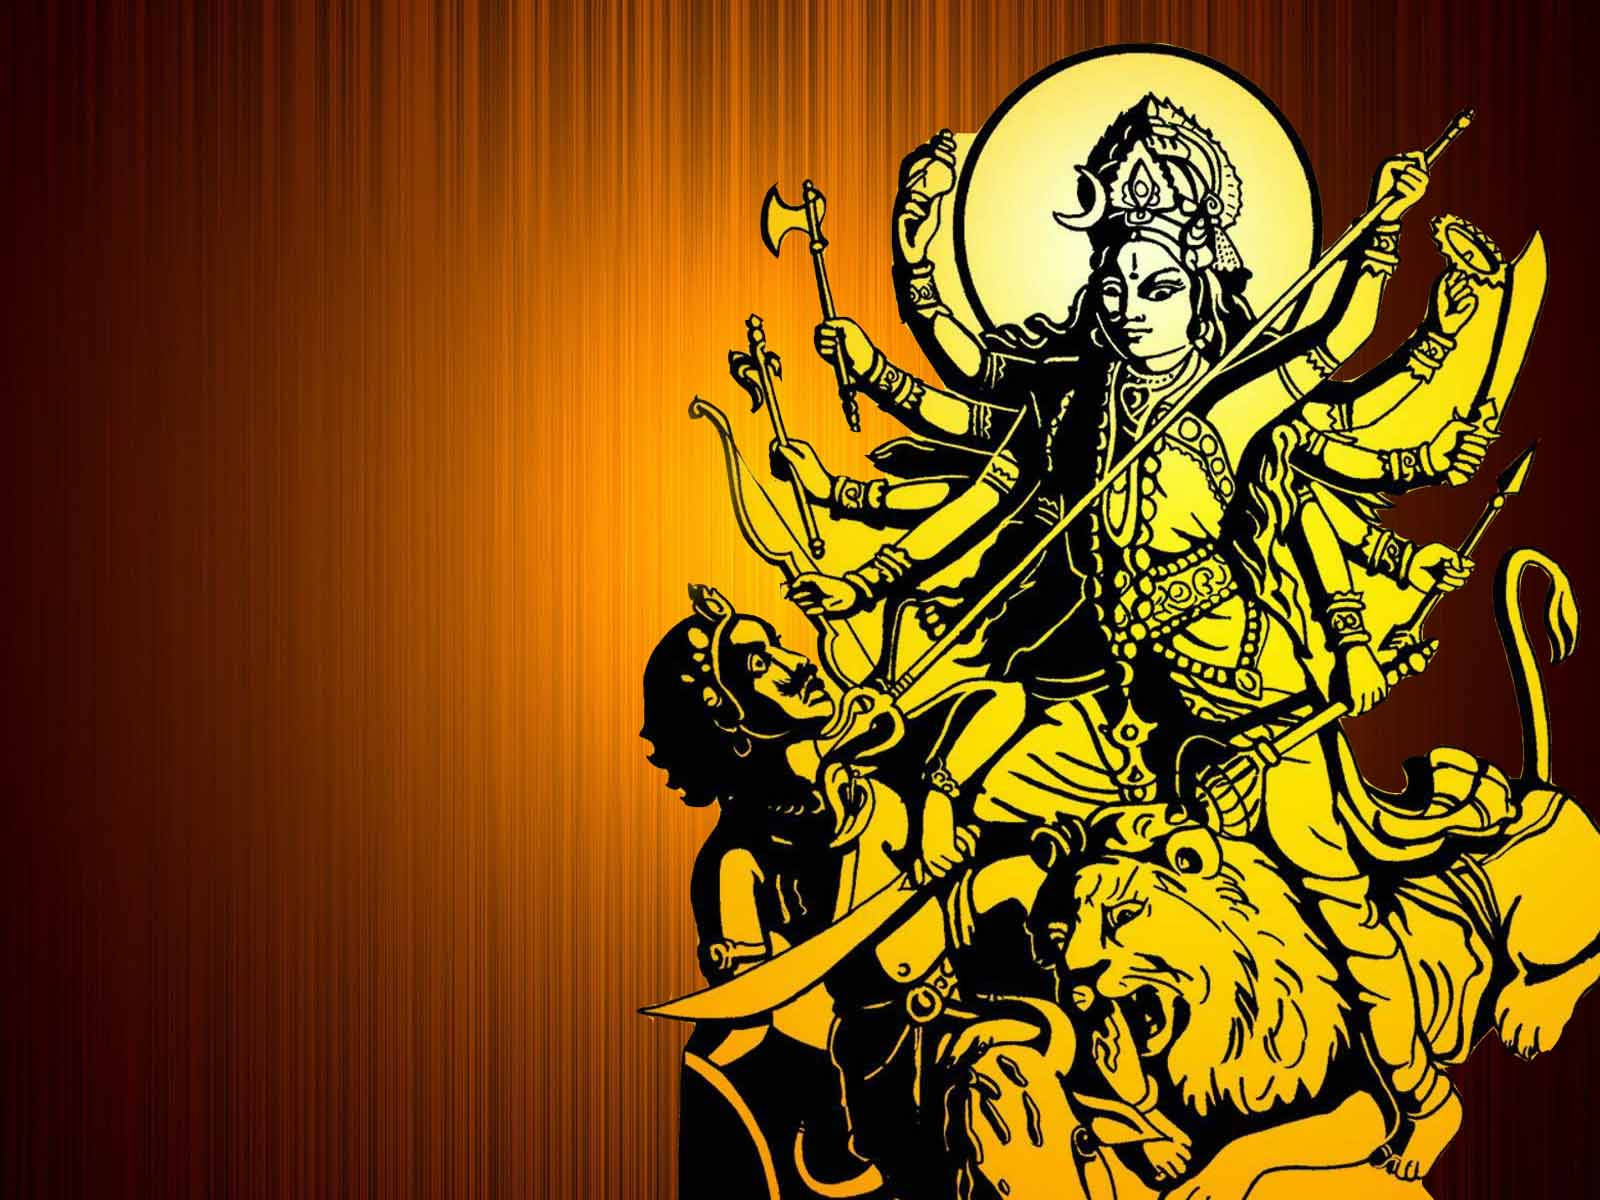 Maa Kali And Shiva Yellow Aesthetic Sketch On Orange